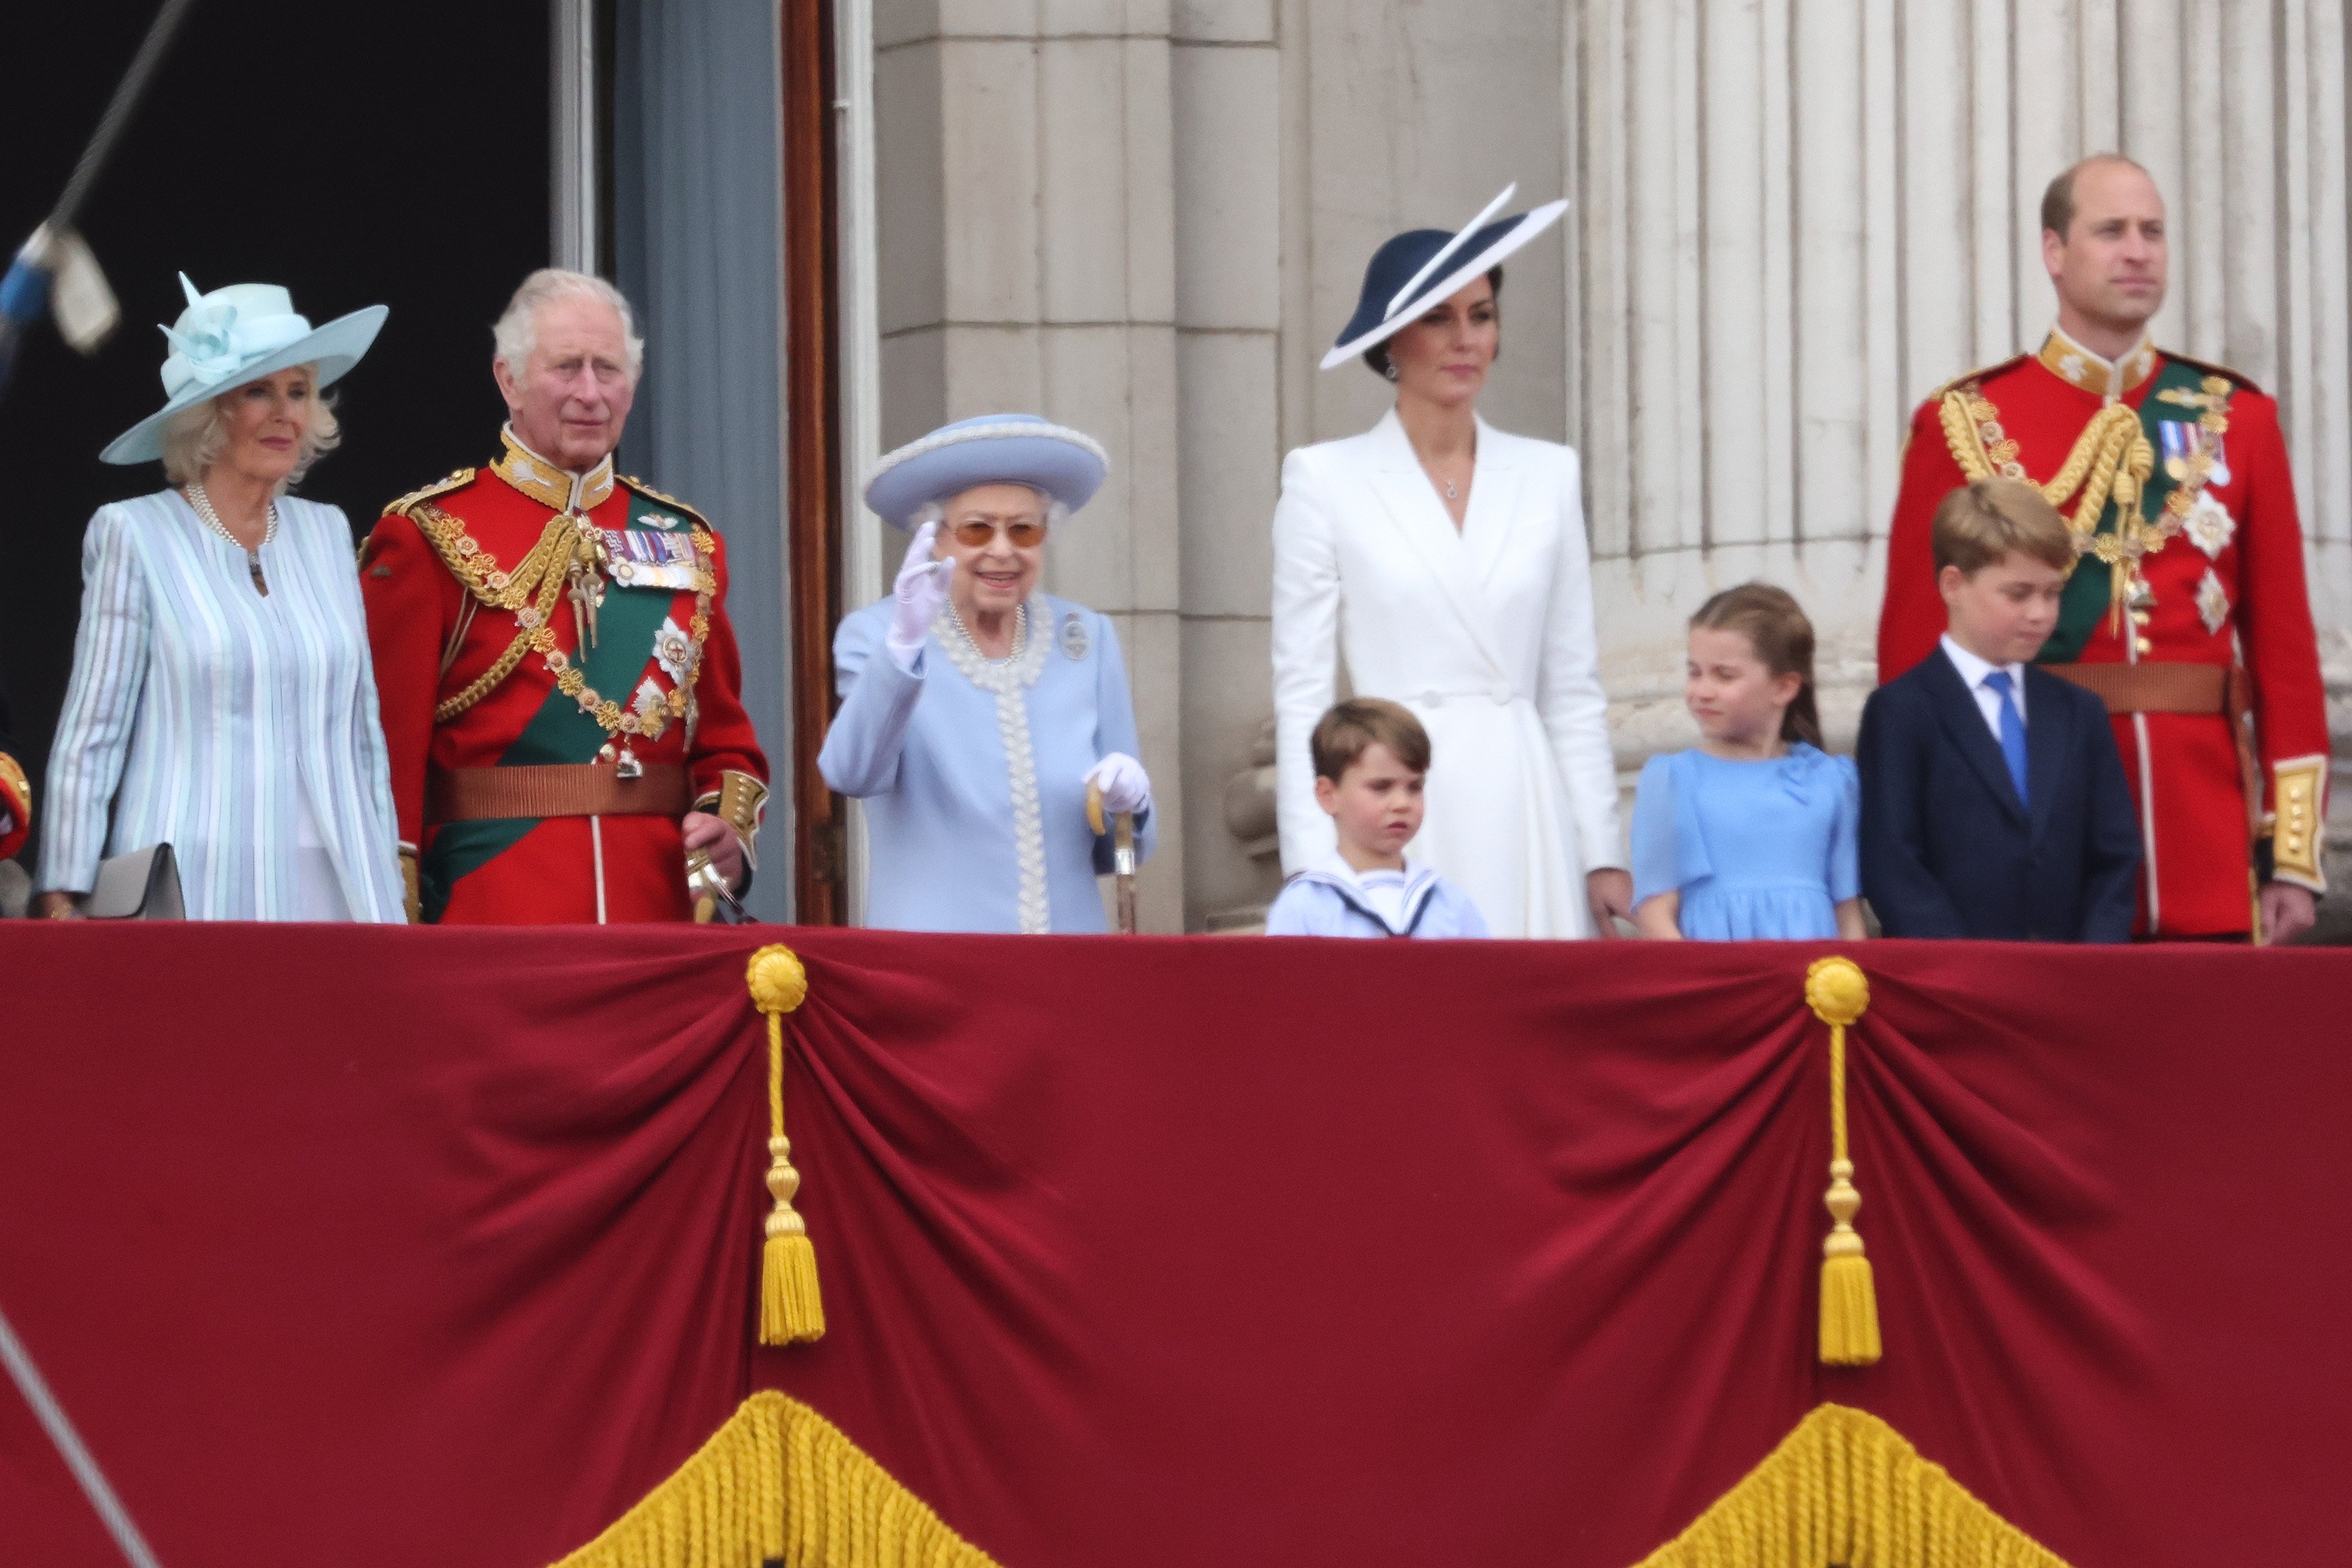 La reina consorte Camilla, el rey Charles III, la reina Elizabeth II, el príncipe William, Kate Middleton con sus hijos George, Charlotte y Louis en el palacio de Buckingham, en 2022. | Foto: Getty Images